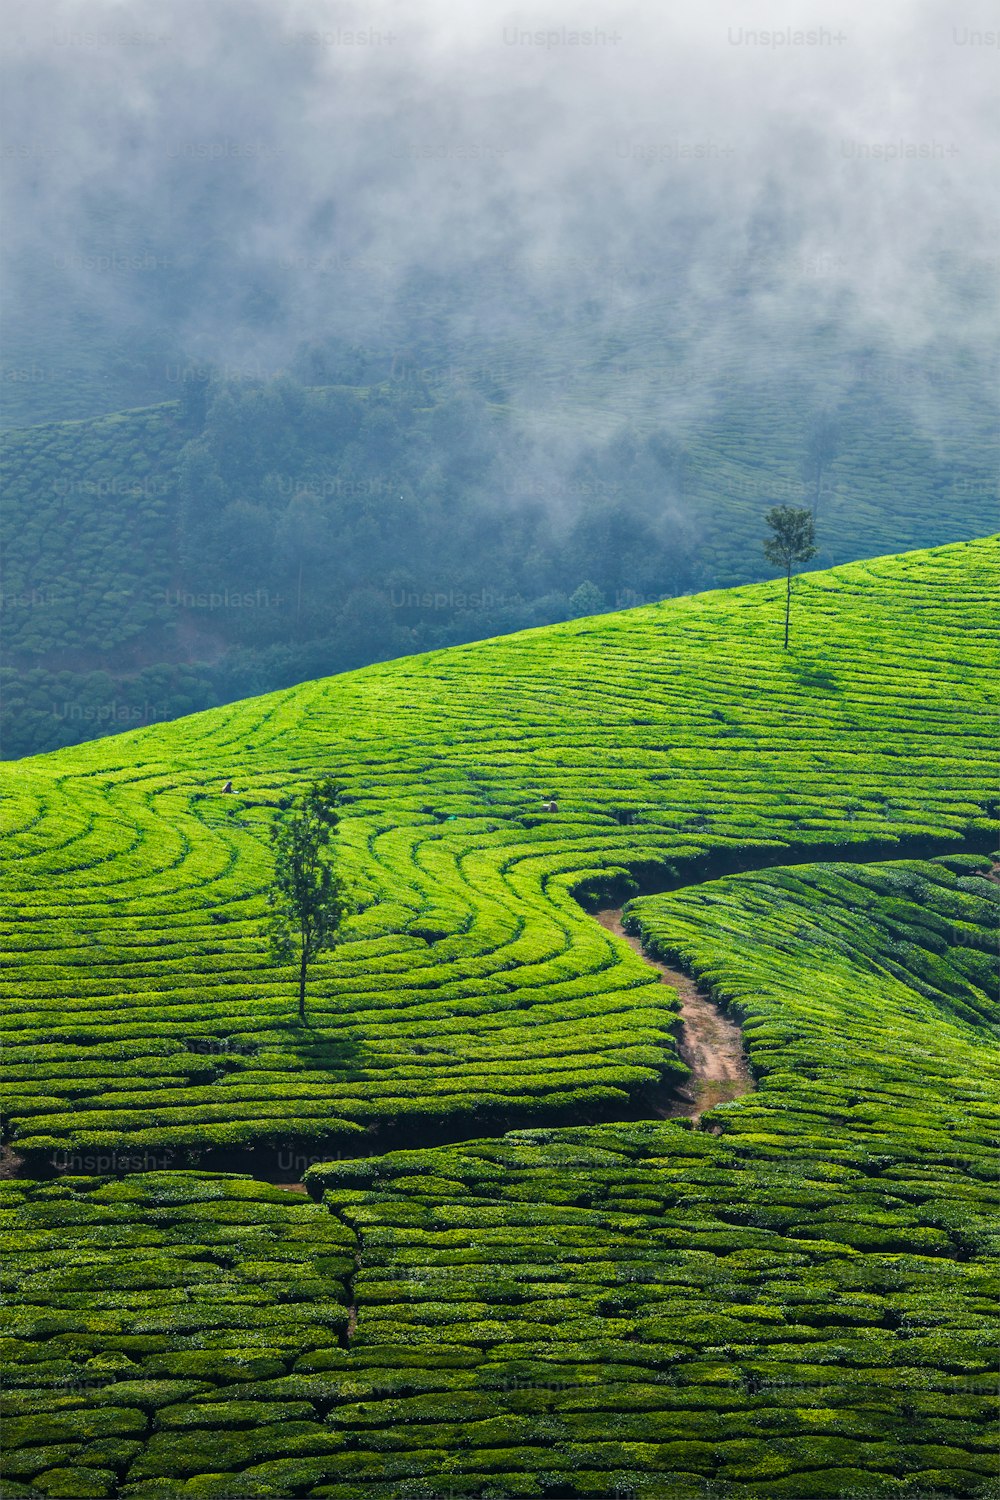 Kerala Indien Reisehintergrund - Grünteeplantagen in Munnar, Kerala, Indien - Touristenattraktion